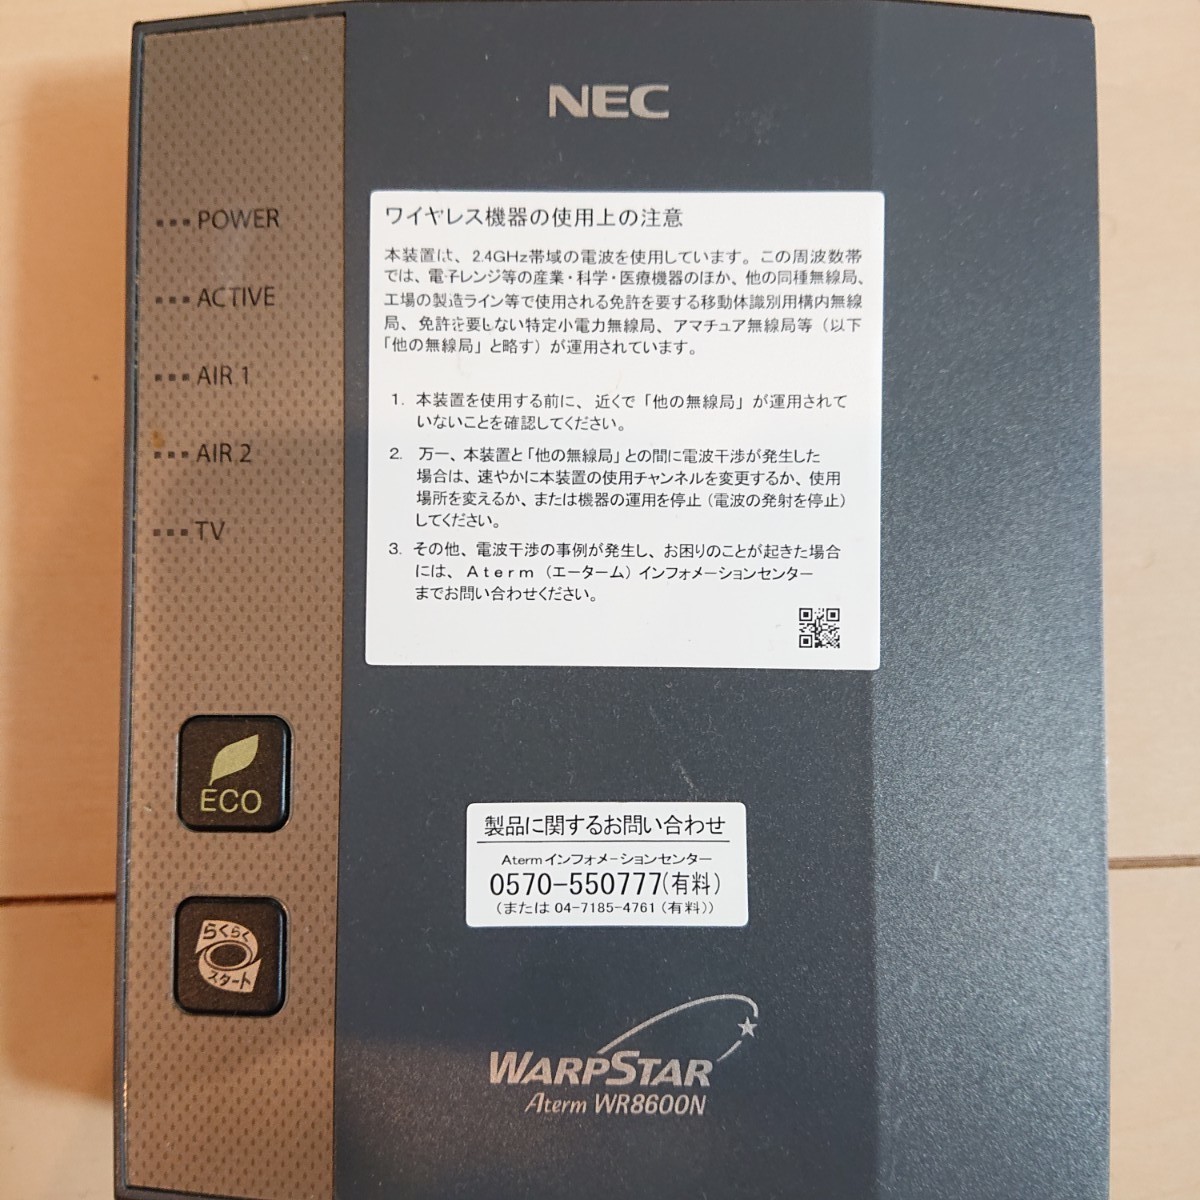 新生活に♪  NEC  ワイヤレスブロードバンドルータ ひかりTV対応 